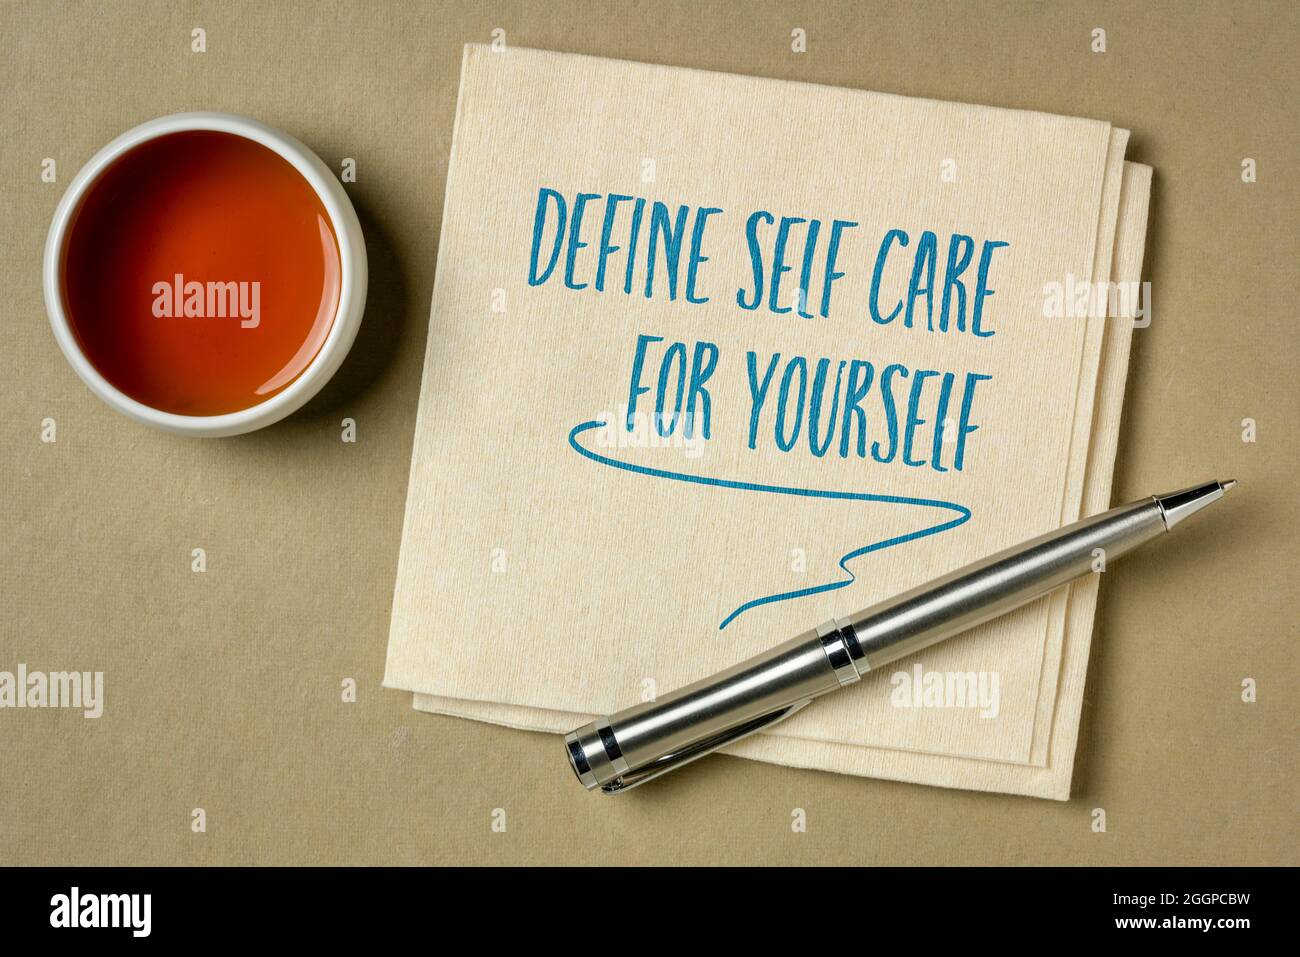 Definieren Sie Selbstpflege für sich selbst - inspirierende Erinnerung oder Ratschläge, Handschrift auf einer Serviette, Lifestyle- und Gesundheitskonzept Stockfoto